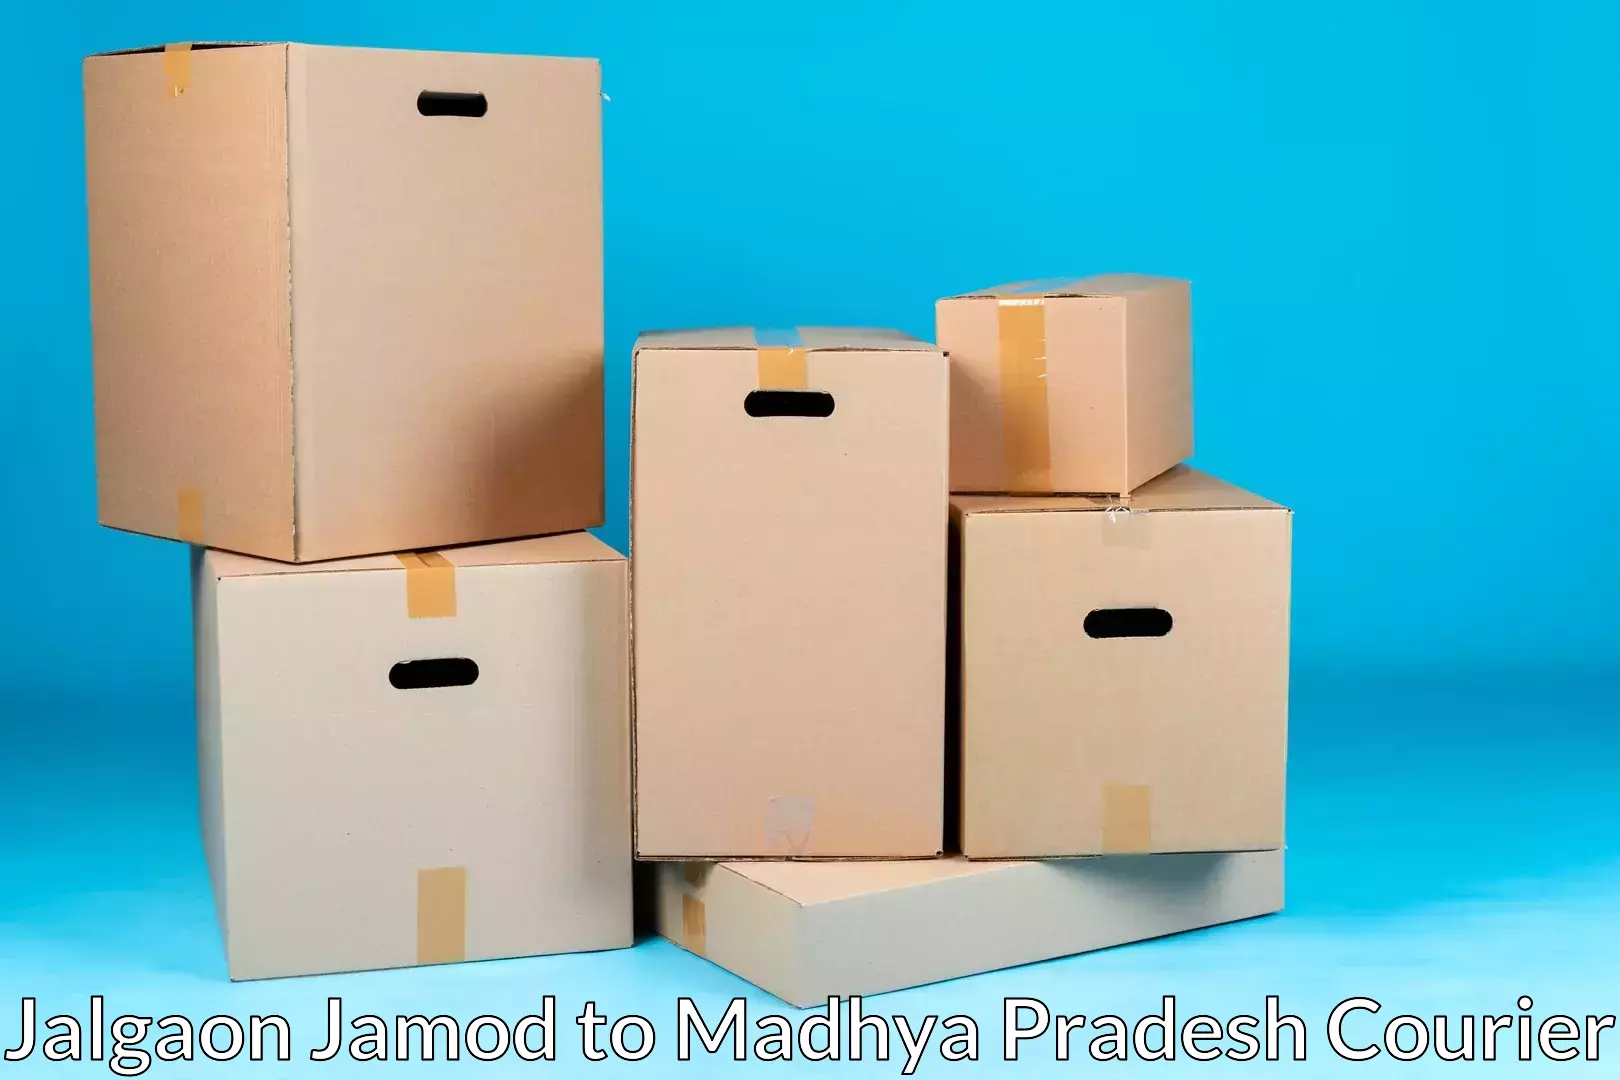 Quick moving services Jalgaon Jamod to Jhabua